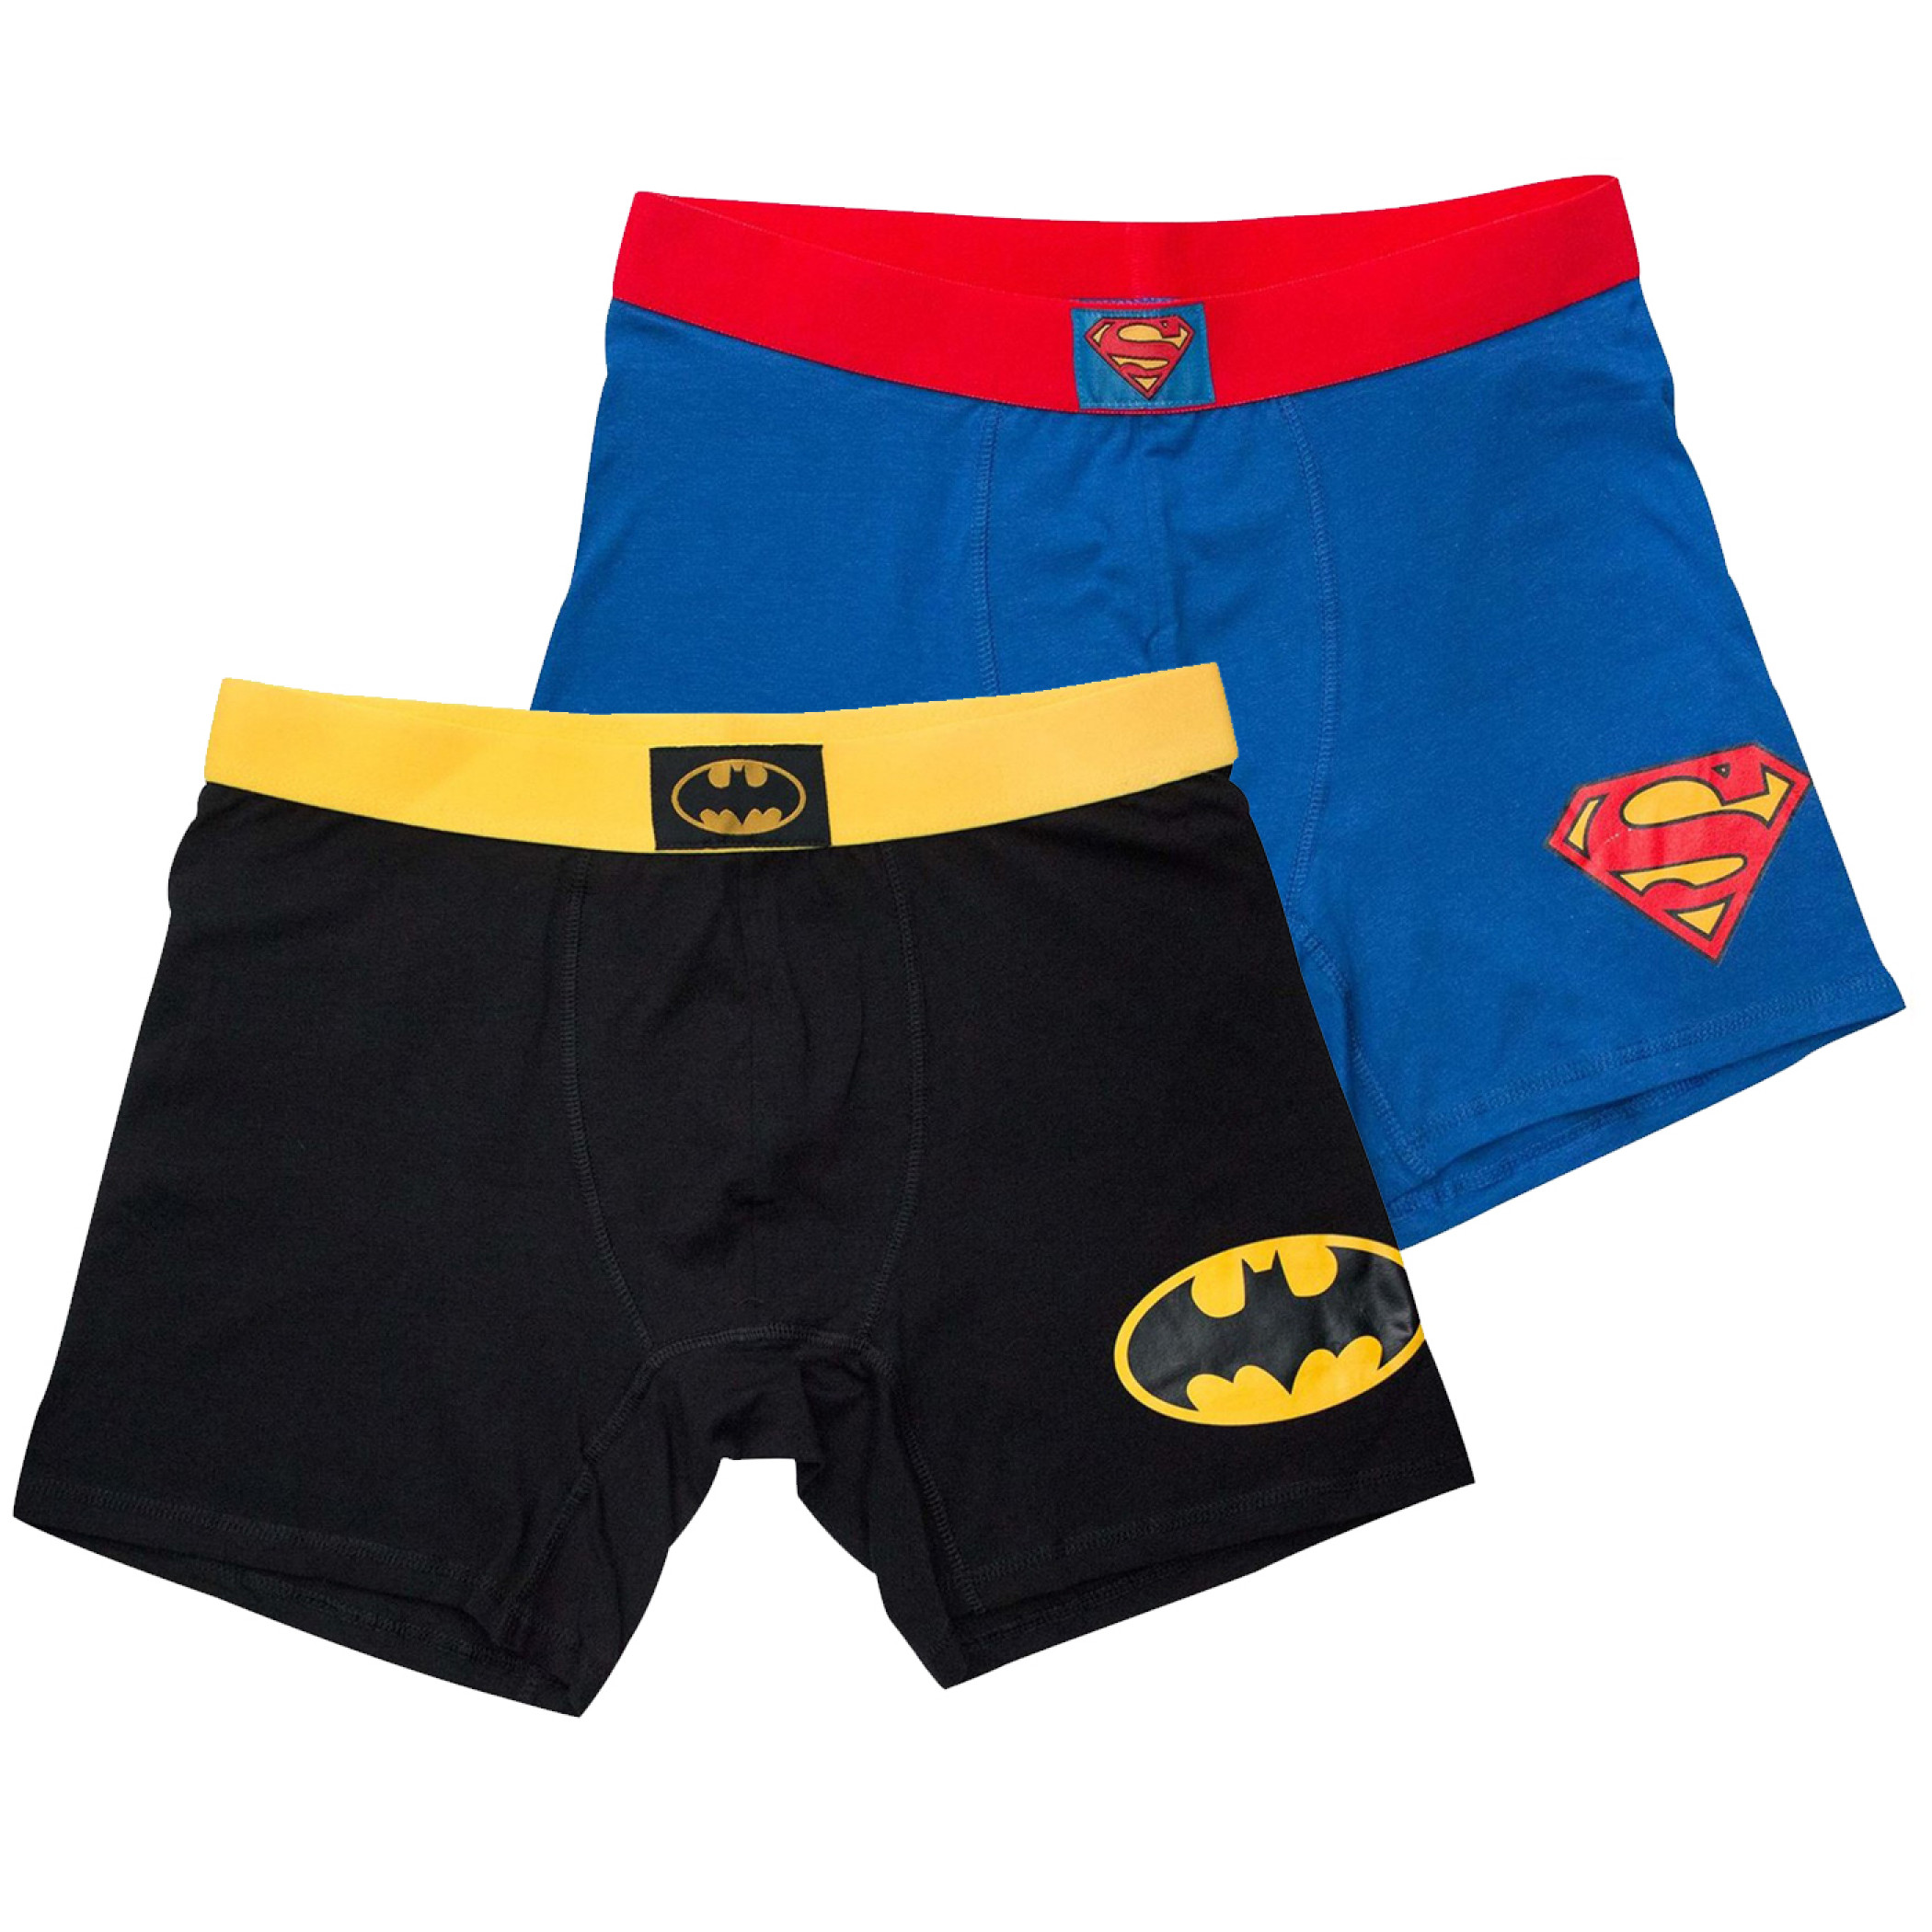 Batman & Superman Men's Boxer Briefs 2-Pack